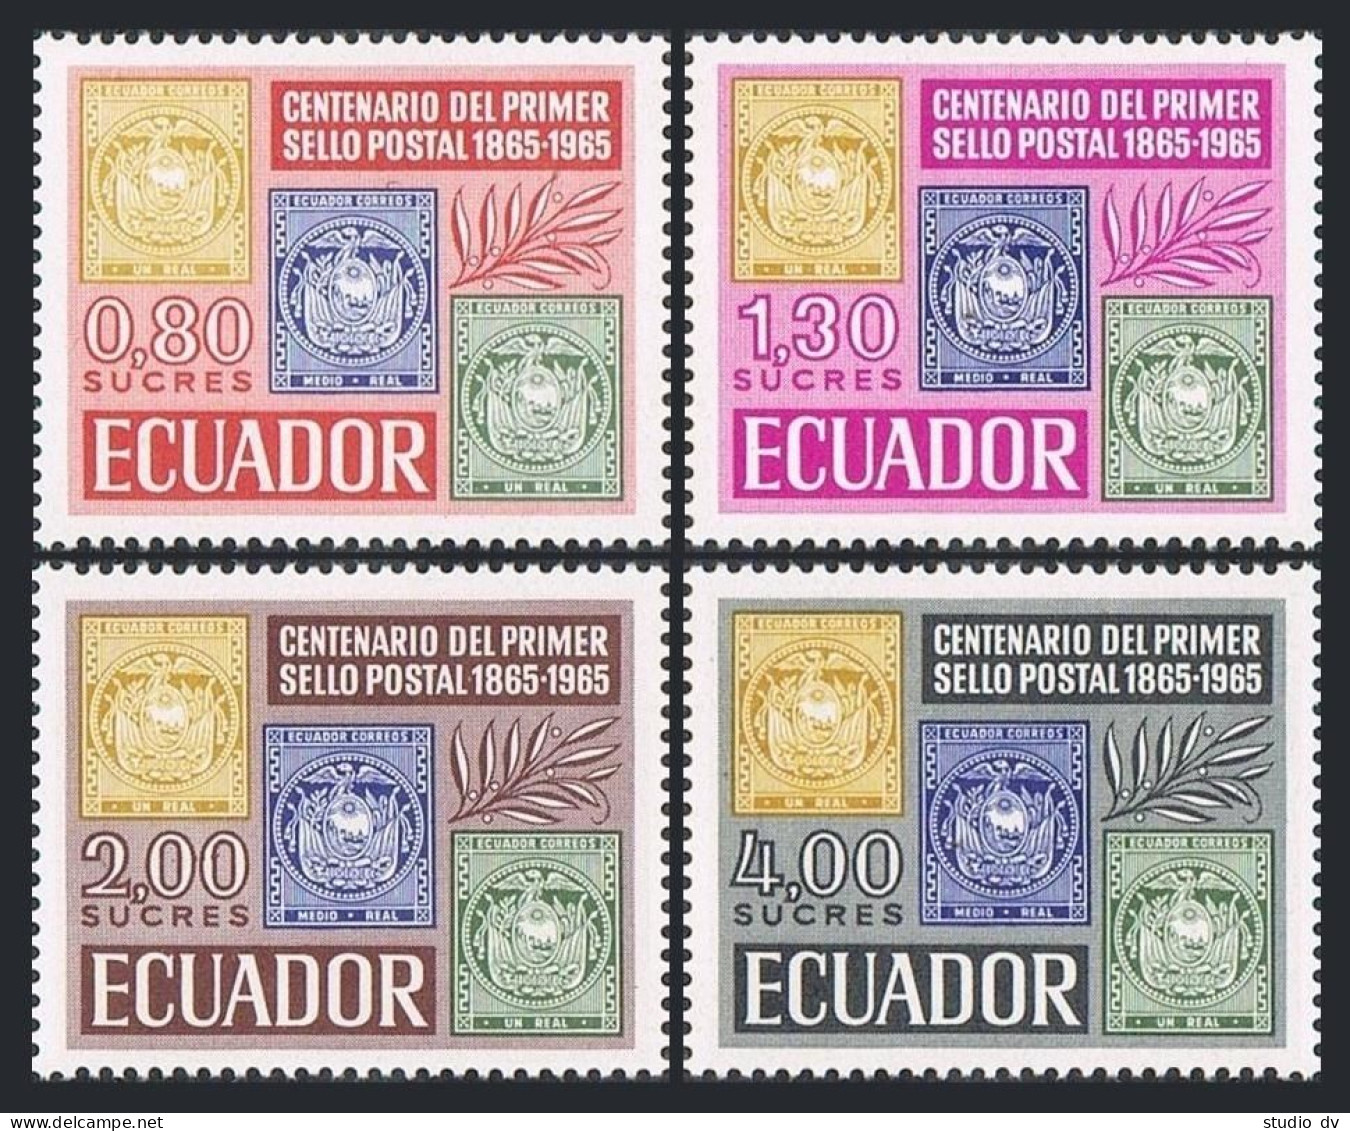 Ecuador 744-747,747a Sheet,MNH.Michel 1186-1189,Bl.13. Postage Stamps-100,1965 - Ecuador